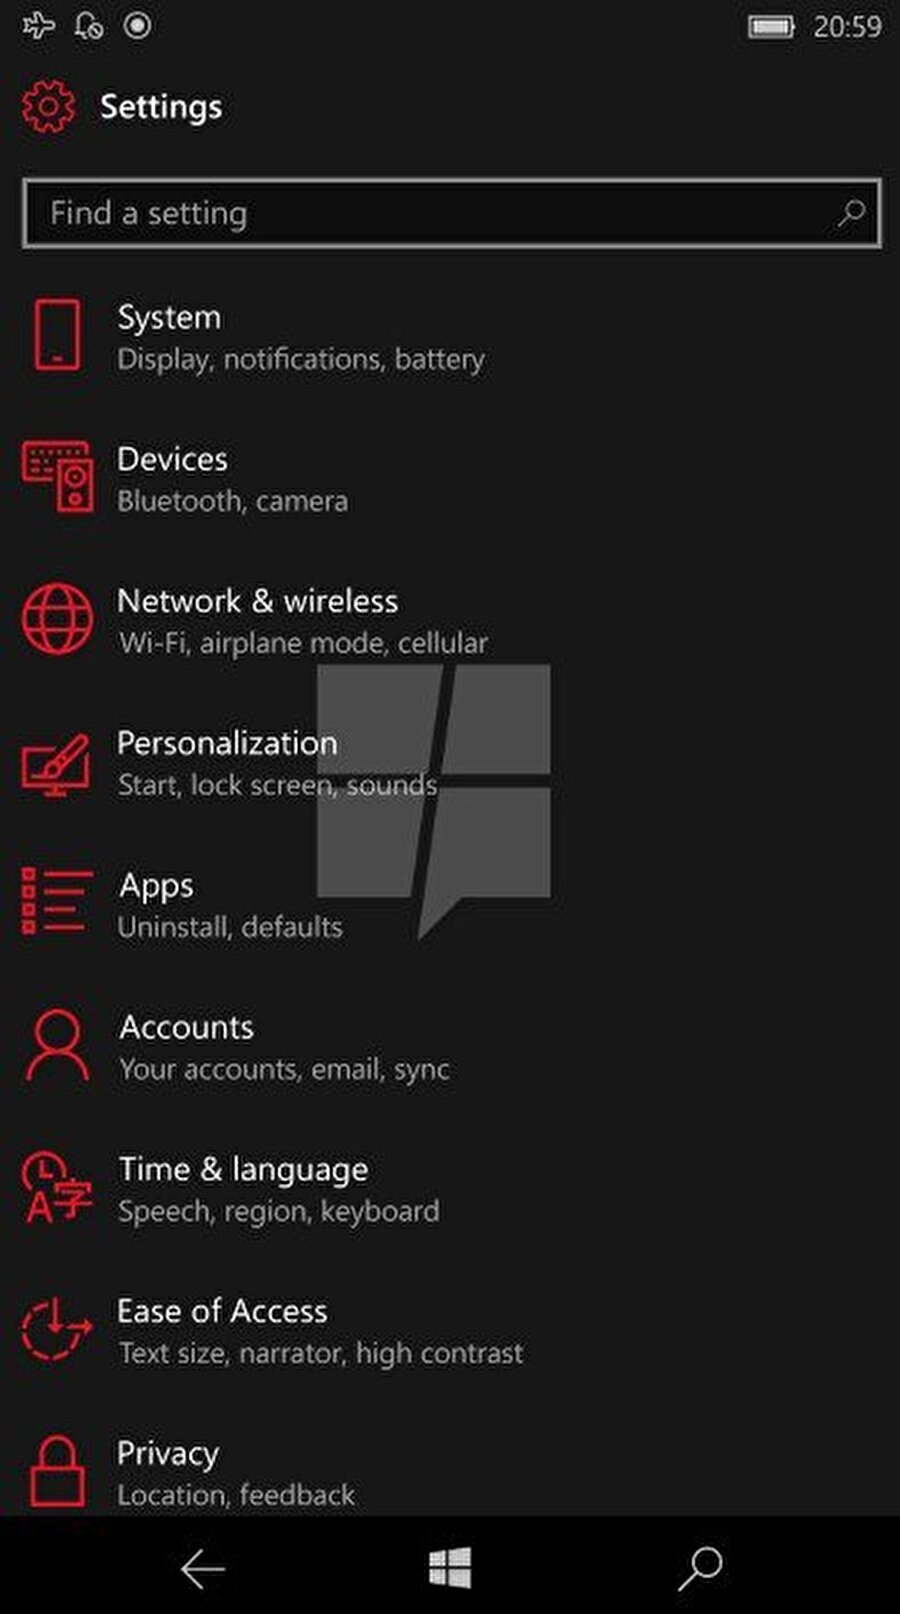 Yenilenen Ayarlar menüsü 

                                    Windows 10 Mobile Creators güncellemesiyle gelen önemli yeniliklerden biri de Ayarlar menüsünün artık çok daha kullanışlı bir yapıya bürünüyor olması.
                                